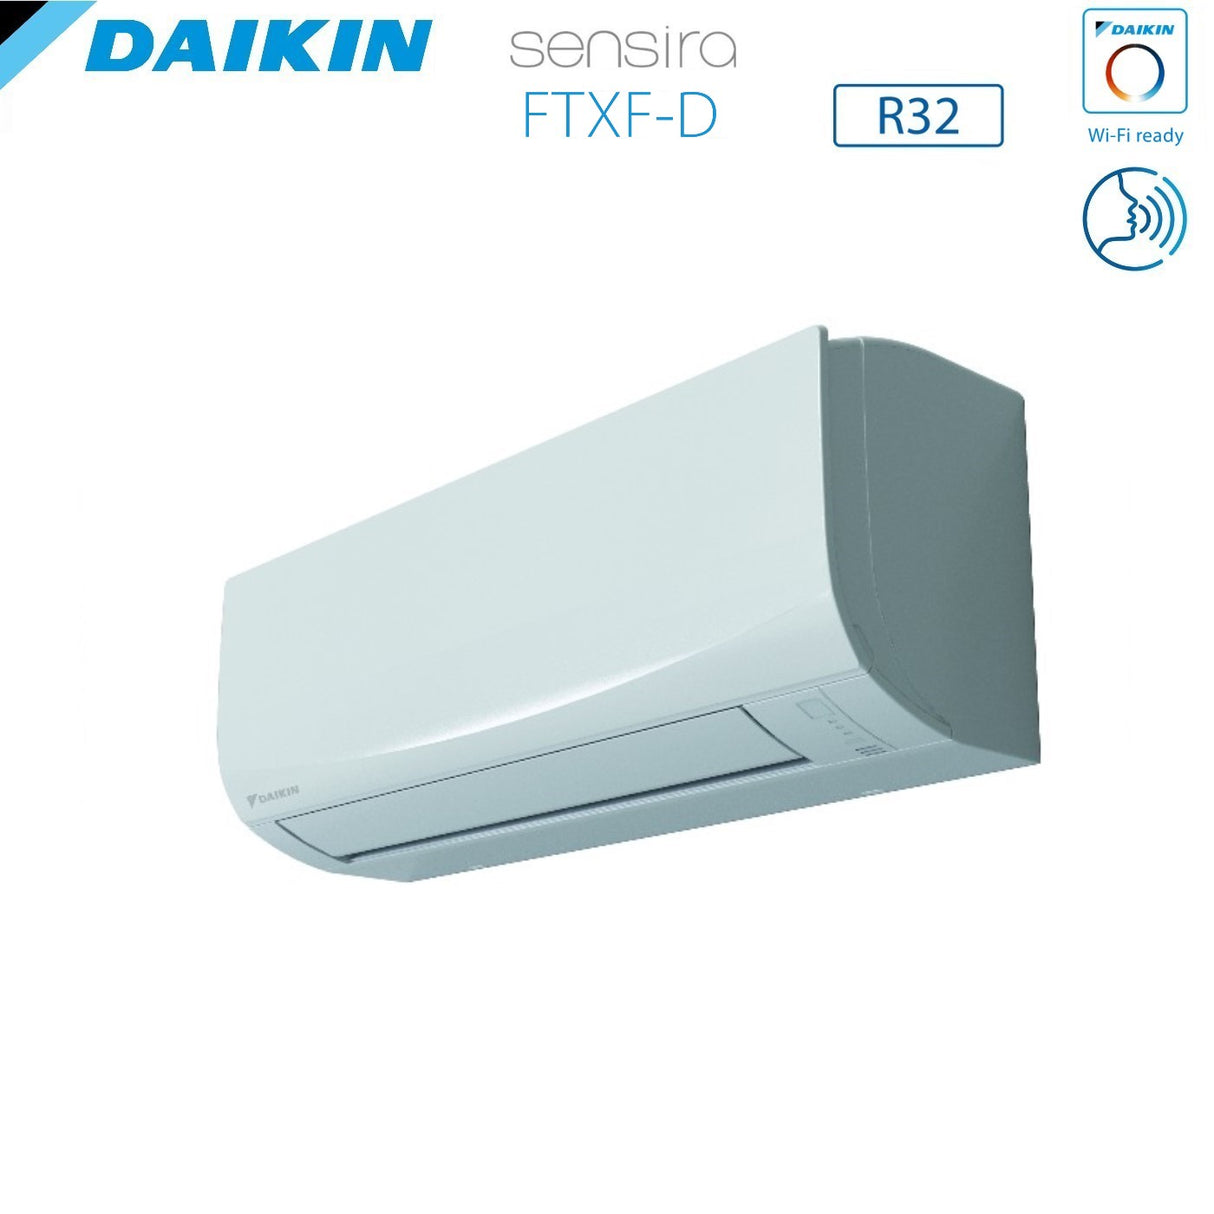 immagine-4-daikin-climatizzatore-condizionatore-daikin-inverter-serie-ecoplus-sensira-9000-btu-ftxf25cd-r-32-wi-fi-optional-classe-a-ean-4548848644537